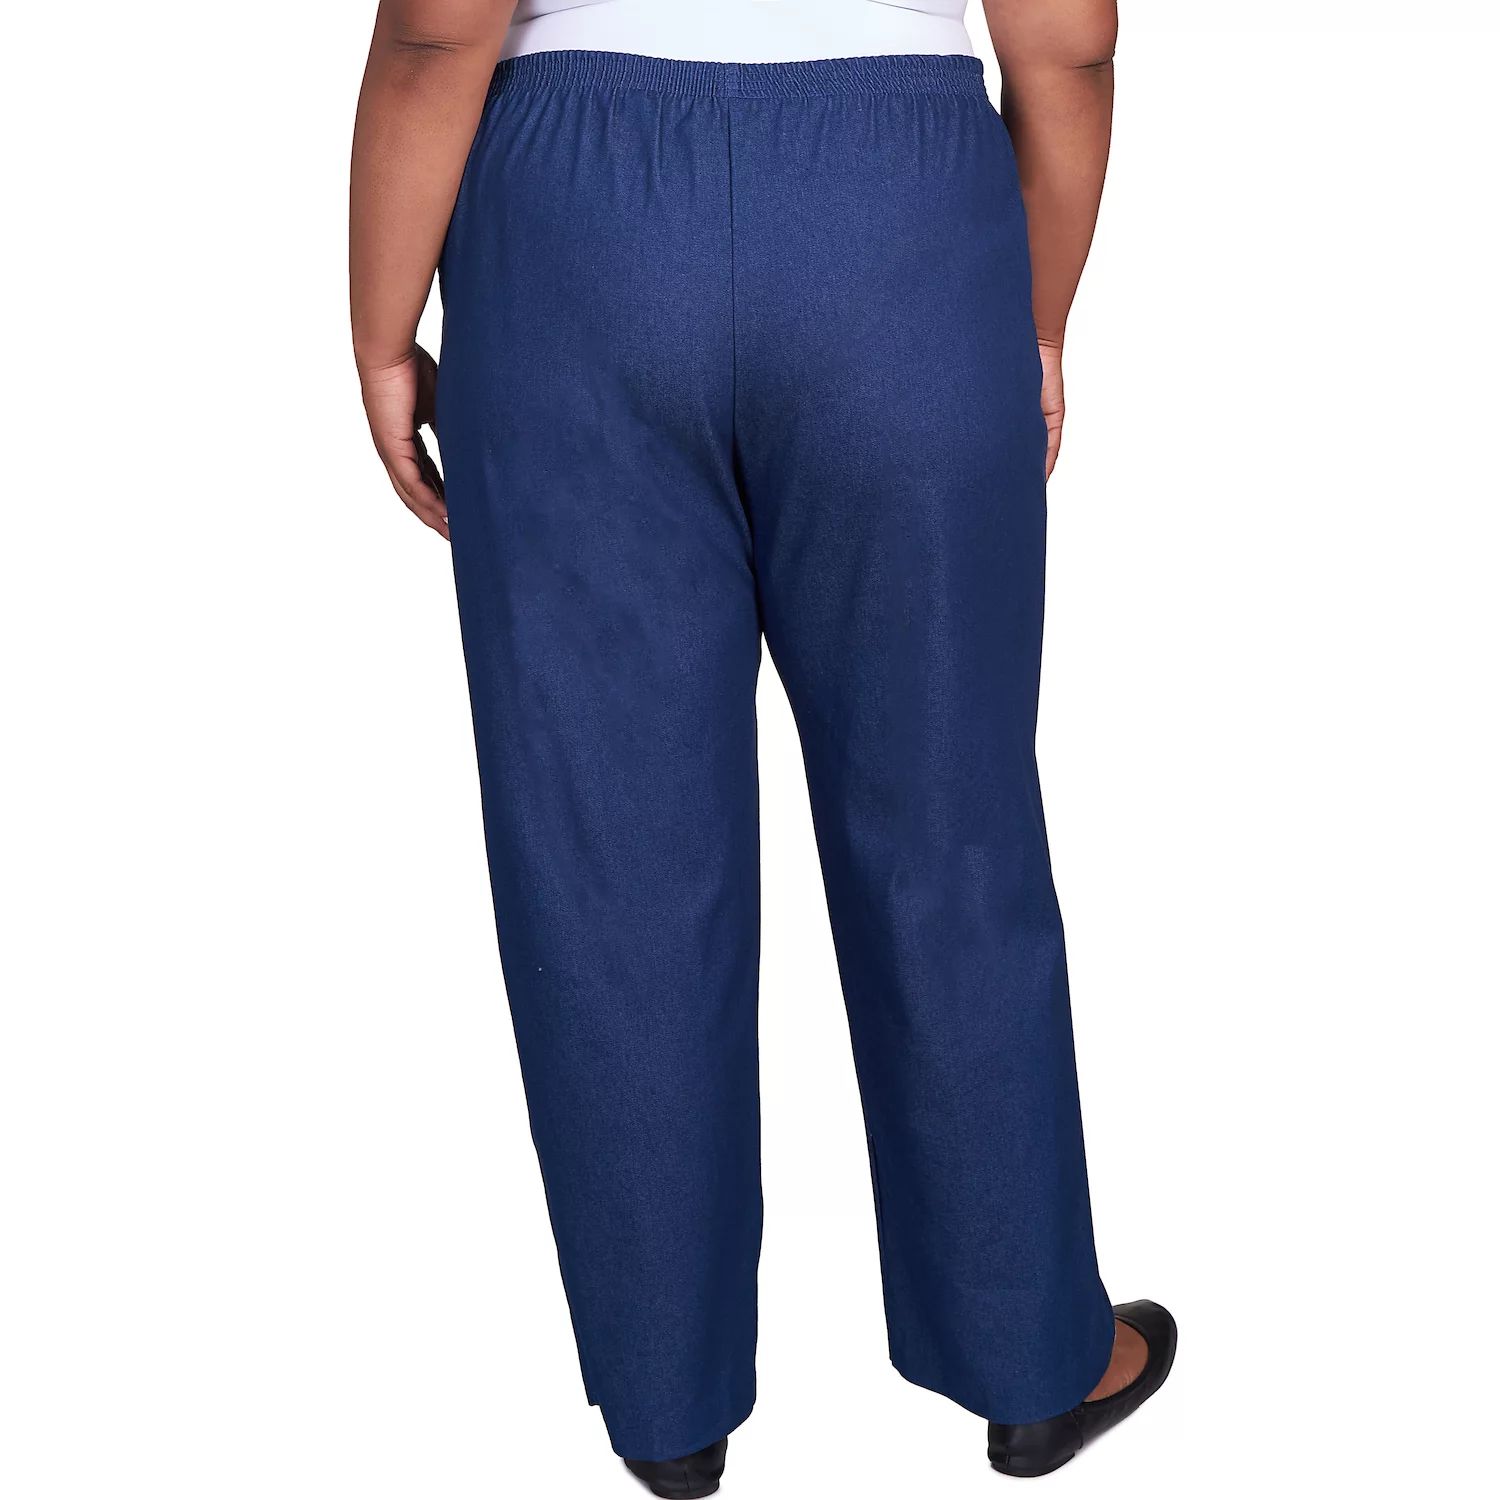 Пропорциональные джинсовые брюки больших размеров Alfred Dunner Alfred Dunner